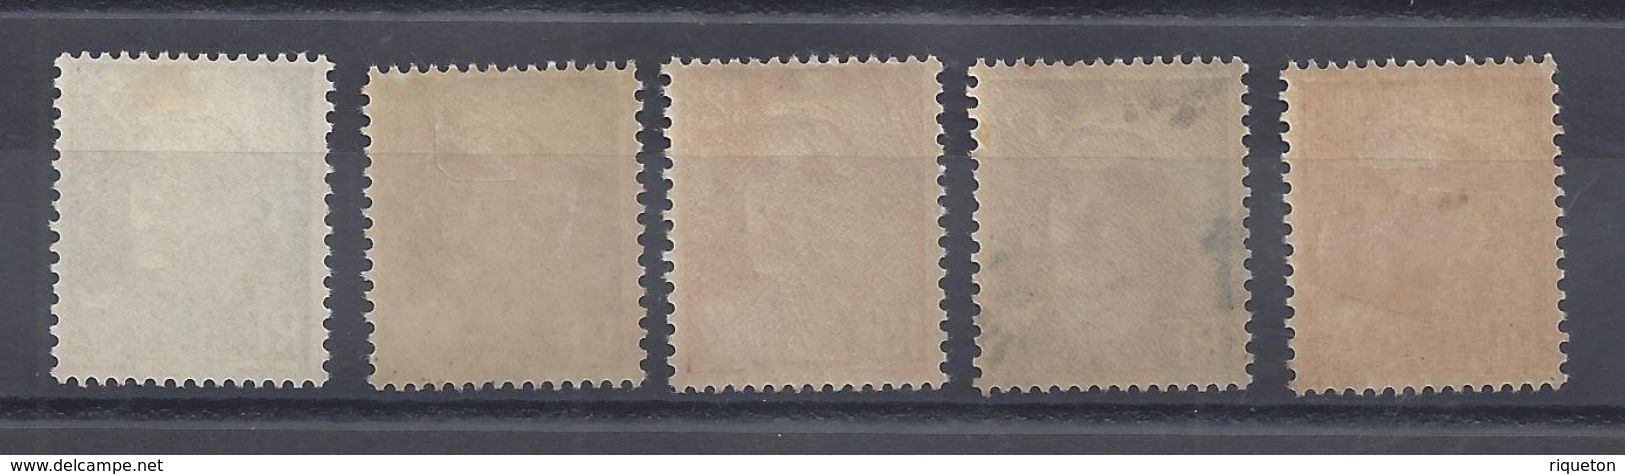 FR - 1951 - Marianne De Gandon - Série N° 883/887 - Neufs Charnières/traces - X - Cote 17 &euro; - B/TB - - Unused Stamps